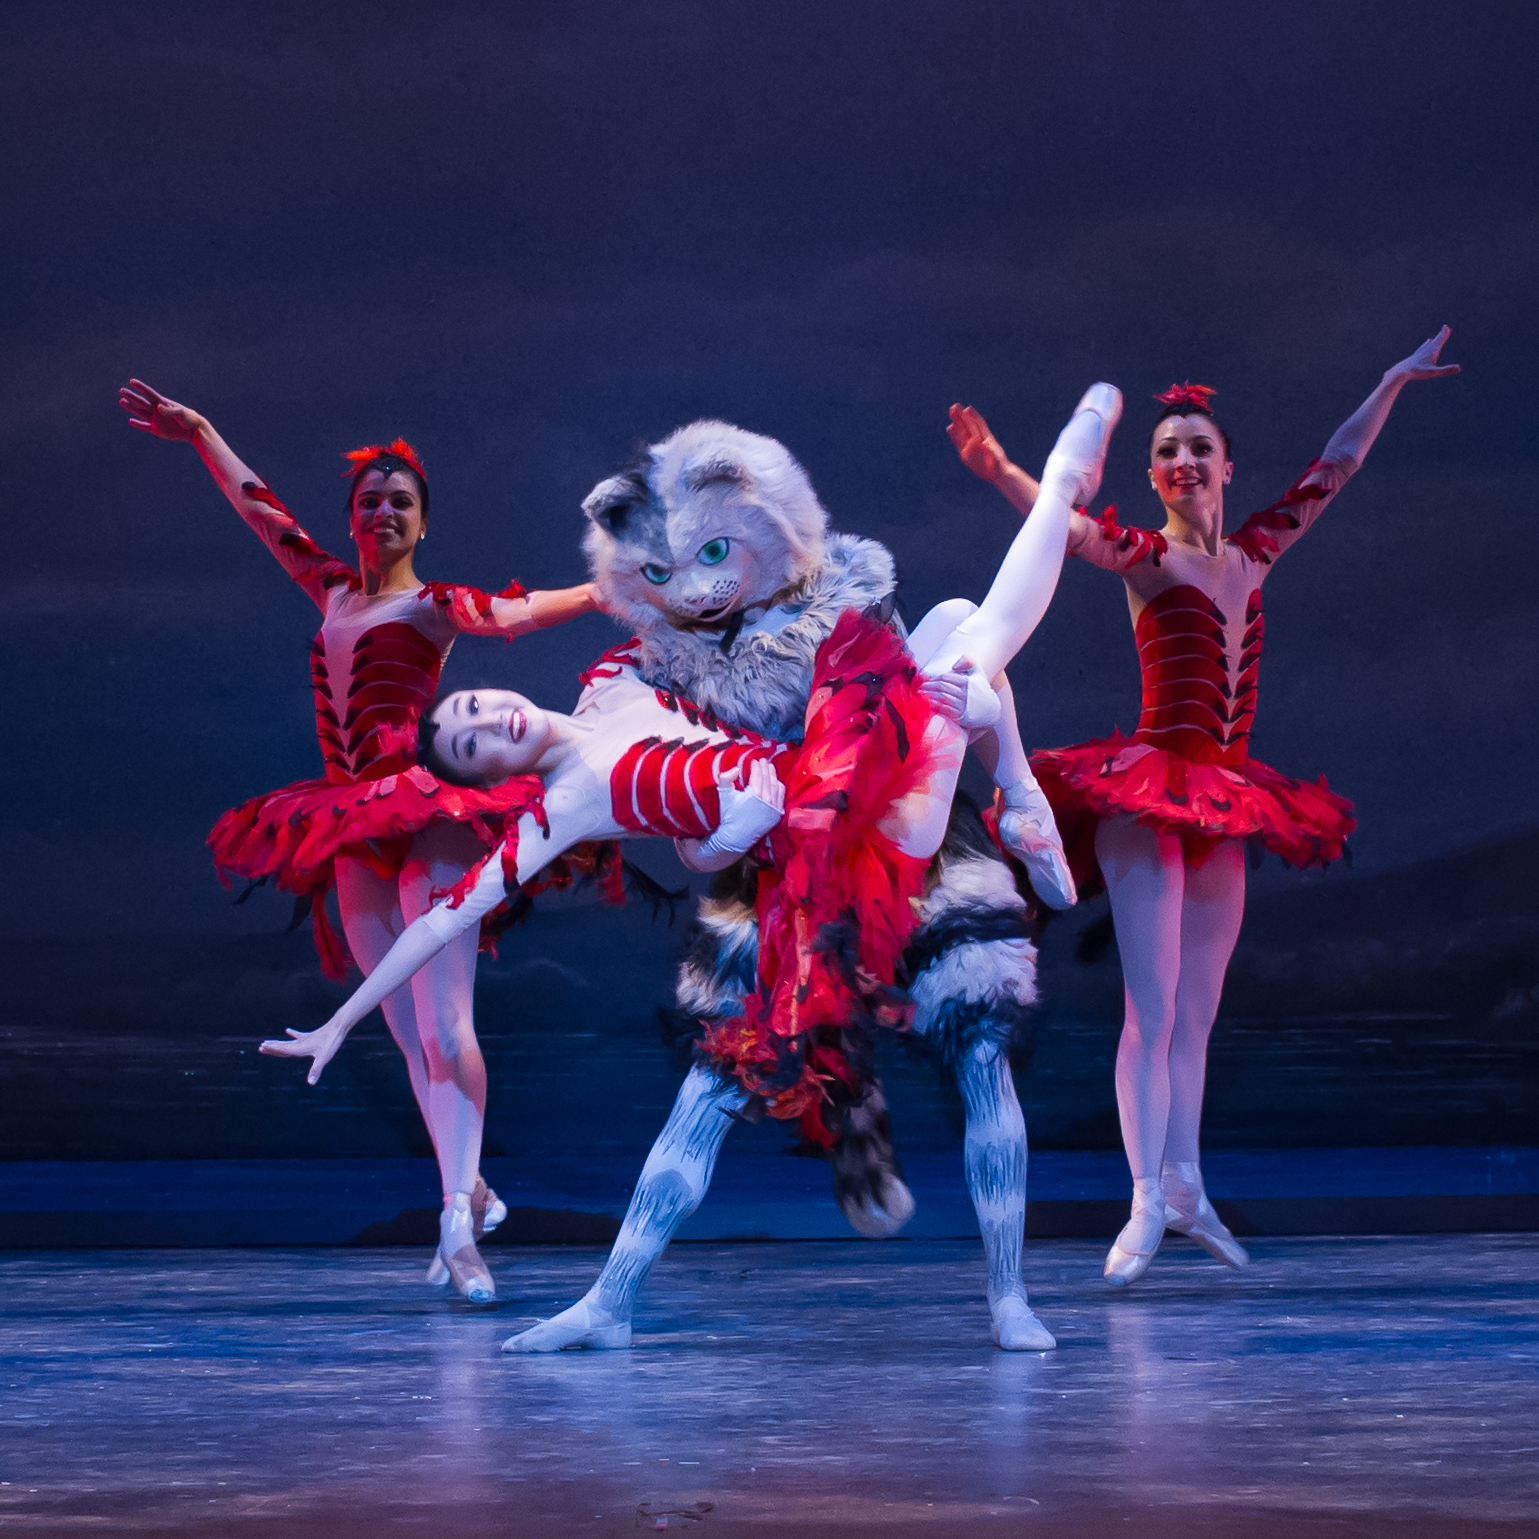 Durante diciembre, el Washington Ballet presenta en el Warner Theatre su versión de "Cascanueces". Foto: Paul Zambrana. Gentileza WB.